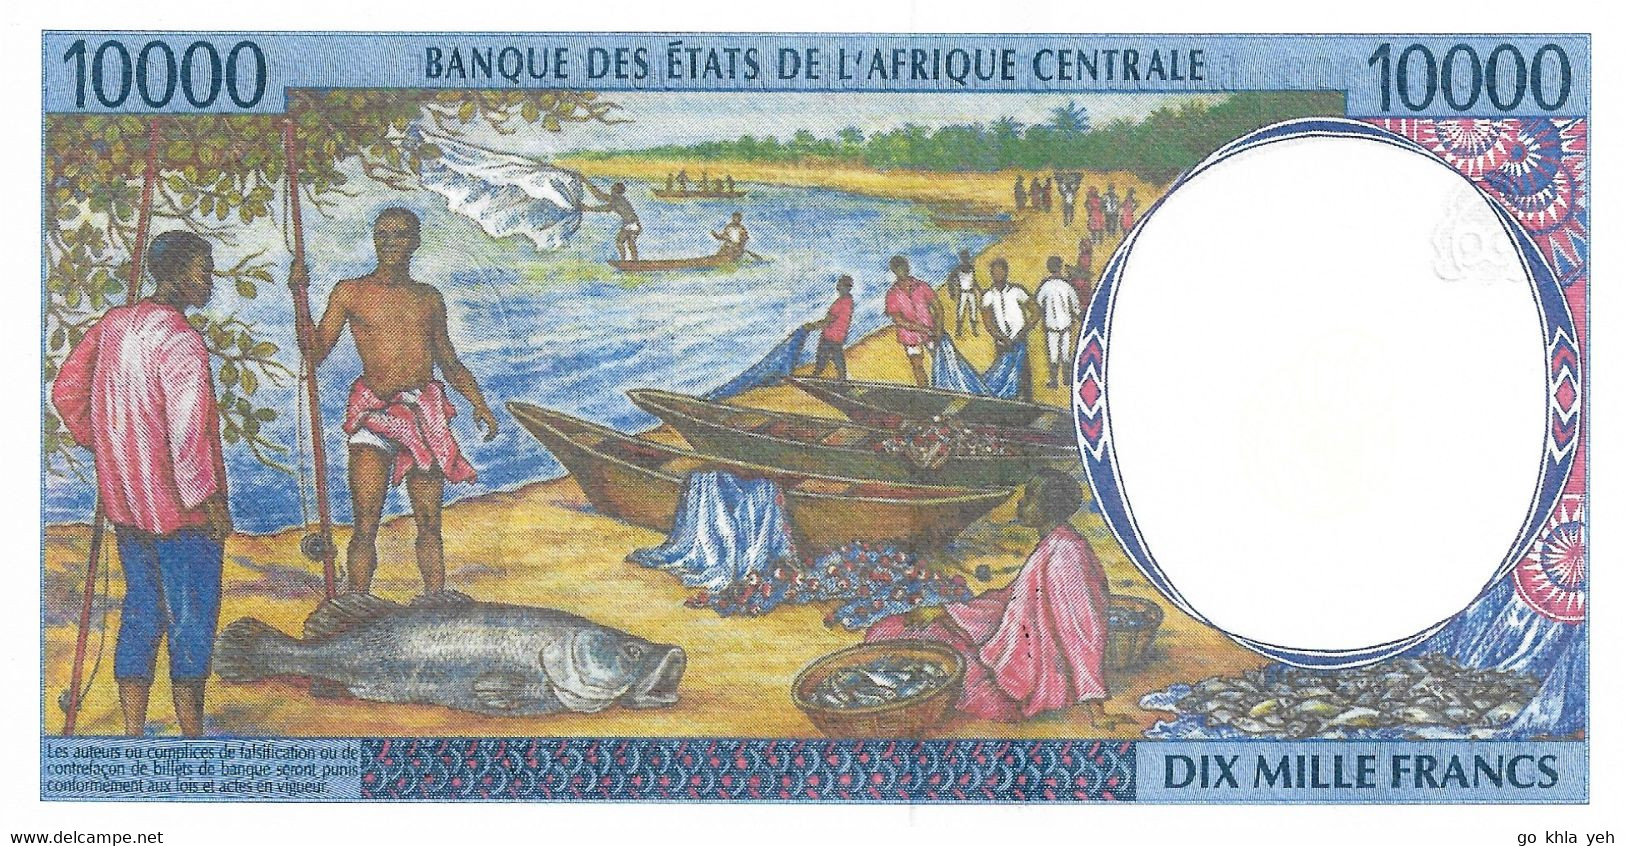 ETATS DE L'AFRIQUE CENTRALE - REPUBLIQUE DU TCHAD  2000  10000 Franc  -  P.605Pf  Neuf UNC - Central African States